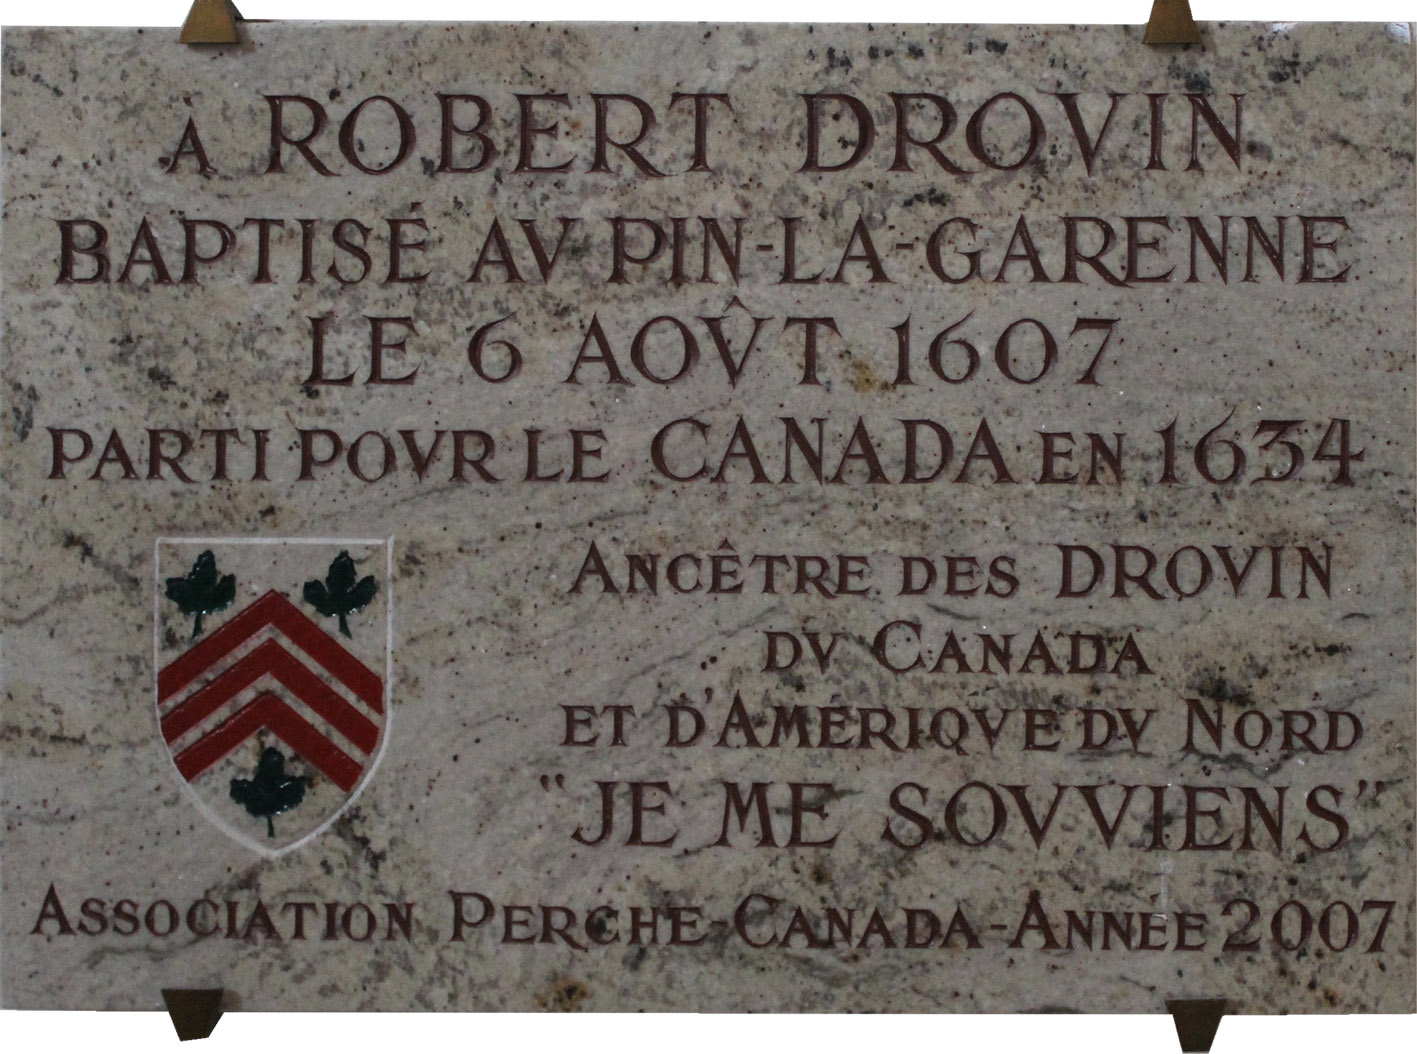 Plaque en l'honneur de Robert Drouin au Pin-la-Garenne